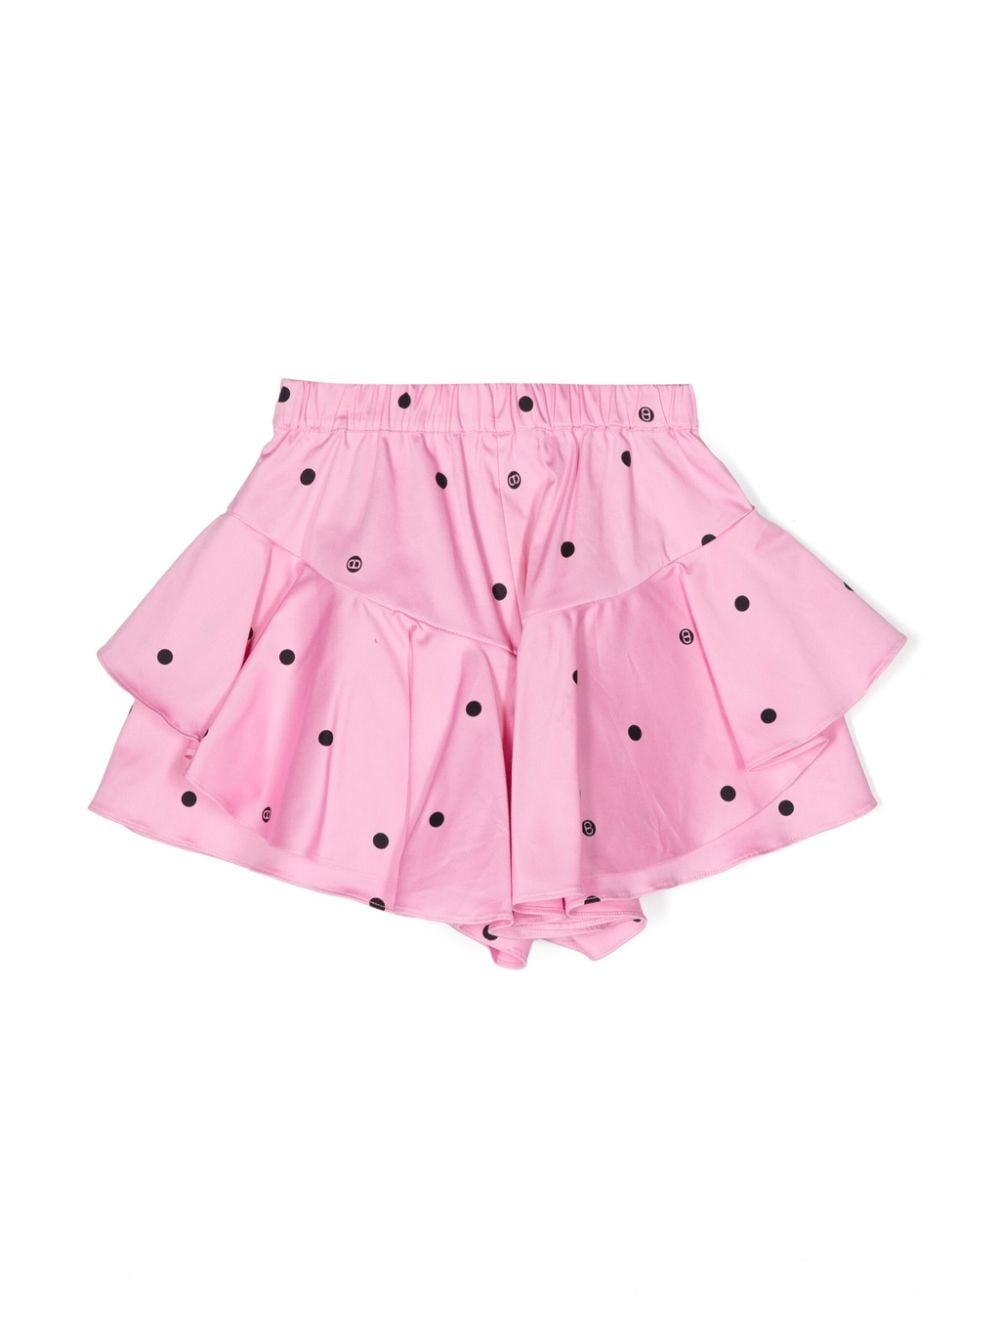 Pink polka dot skirt for girls